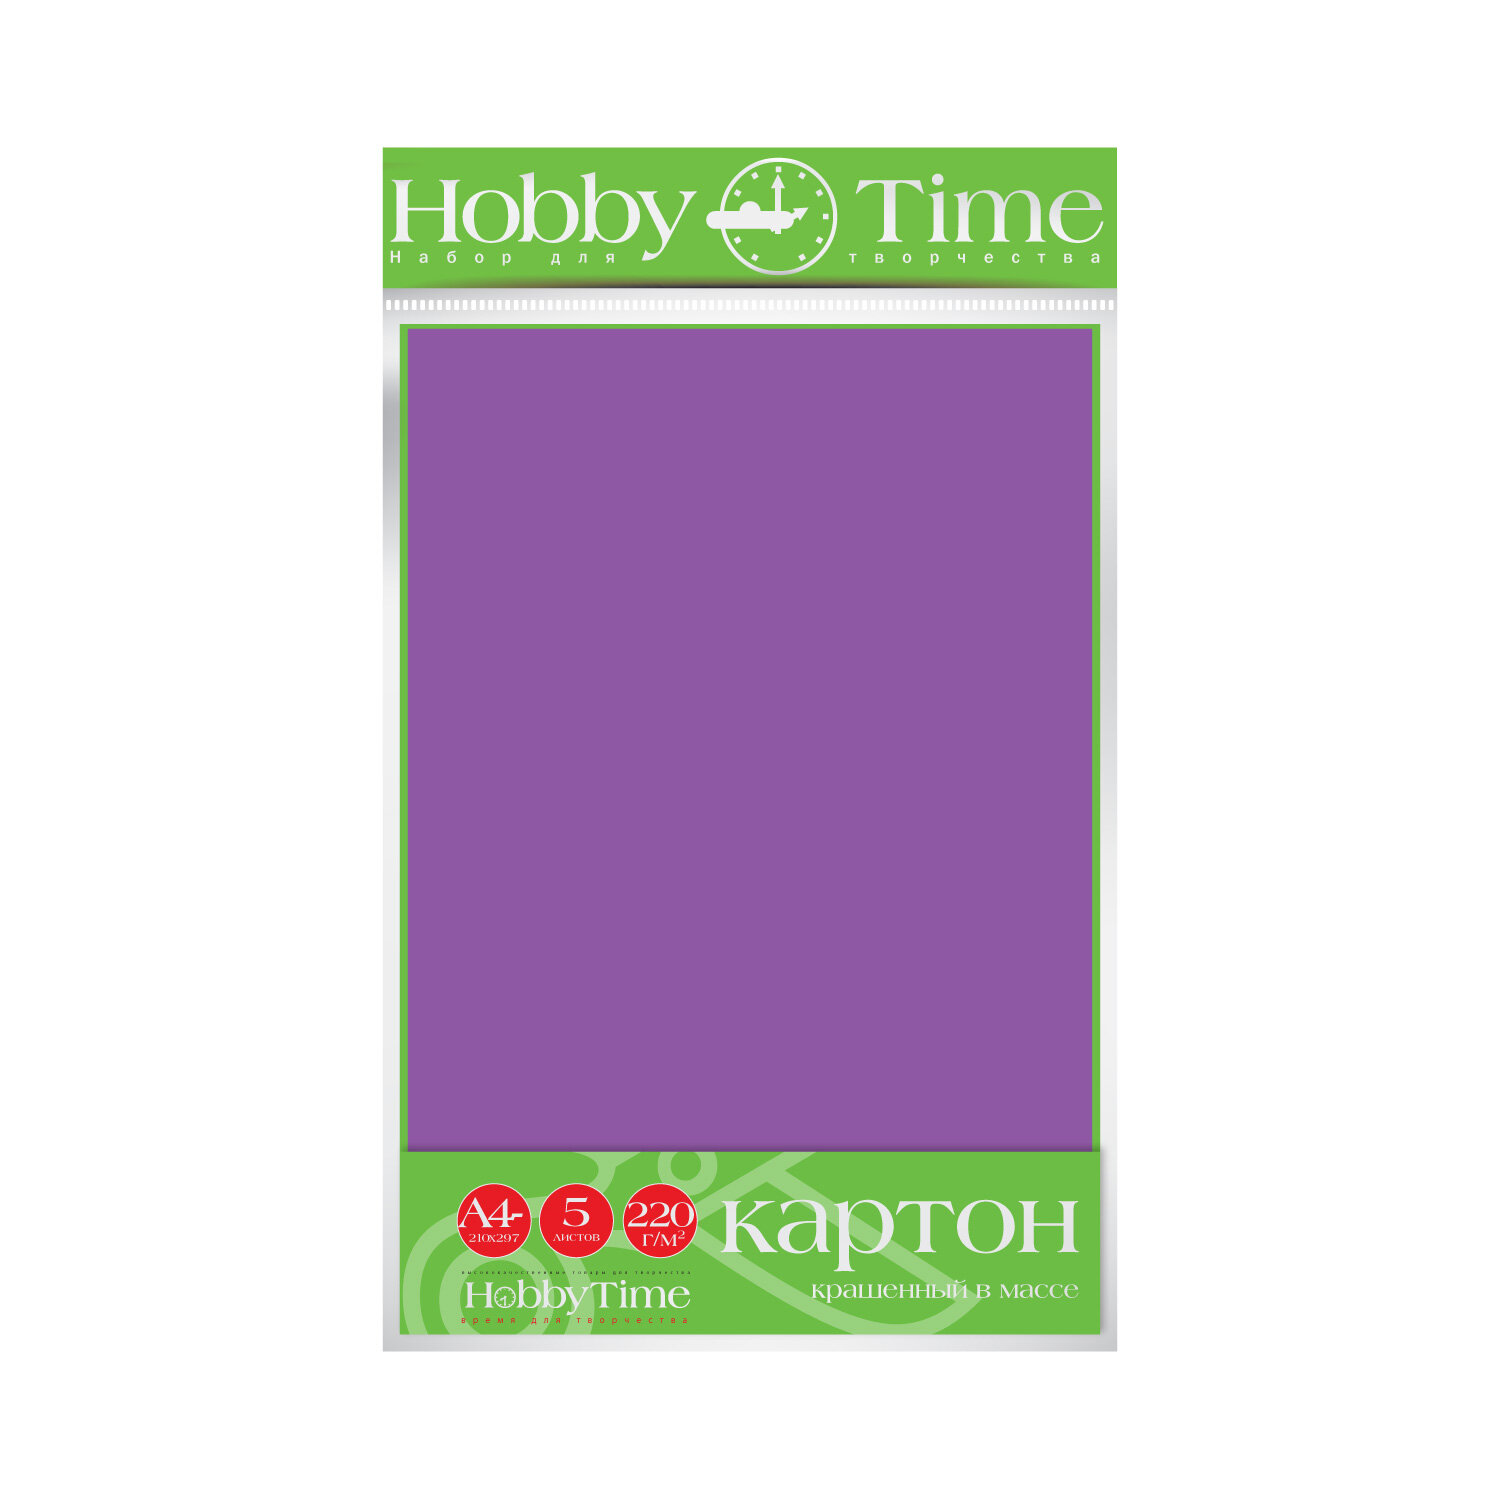 Набор цветного картона HOBBY TIME, А4 (222 х 352 мм), 5 листов, крашенный в массе, сиреневый, Арт : 2-063/01